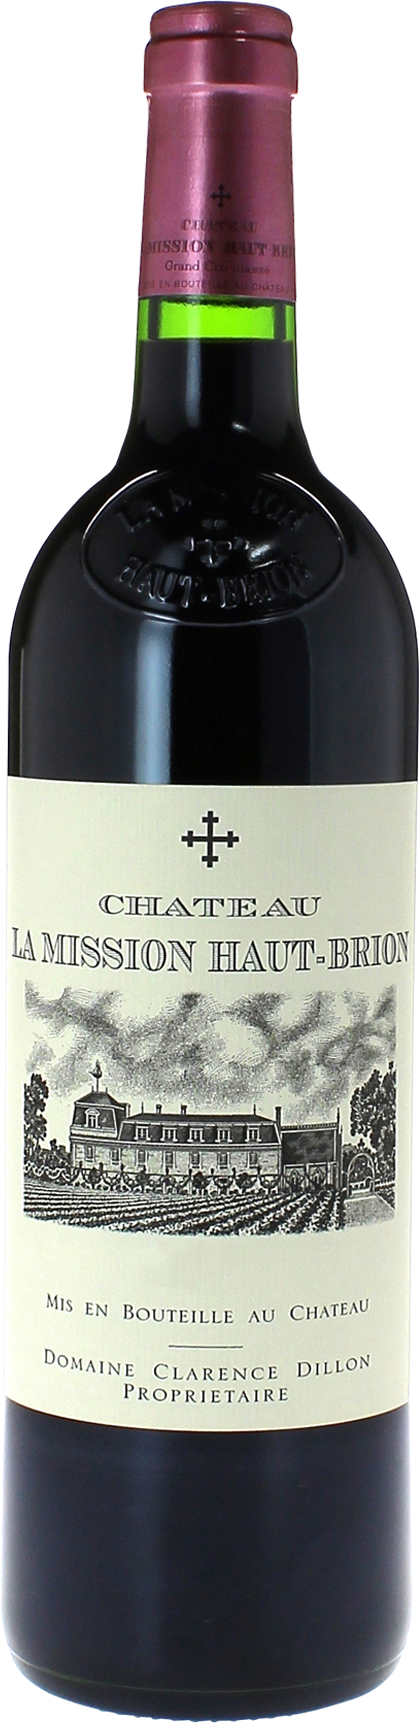 La Mission Haut-Brion 2009